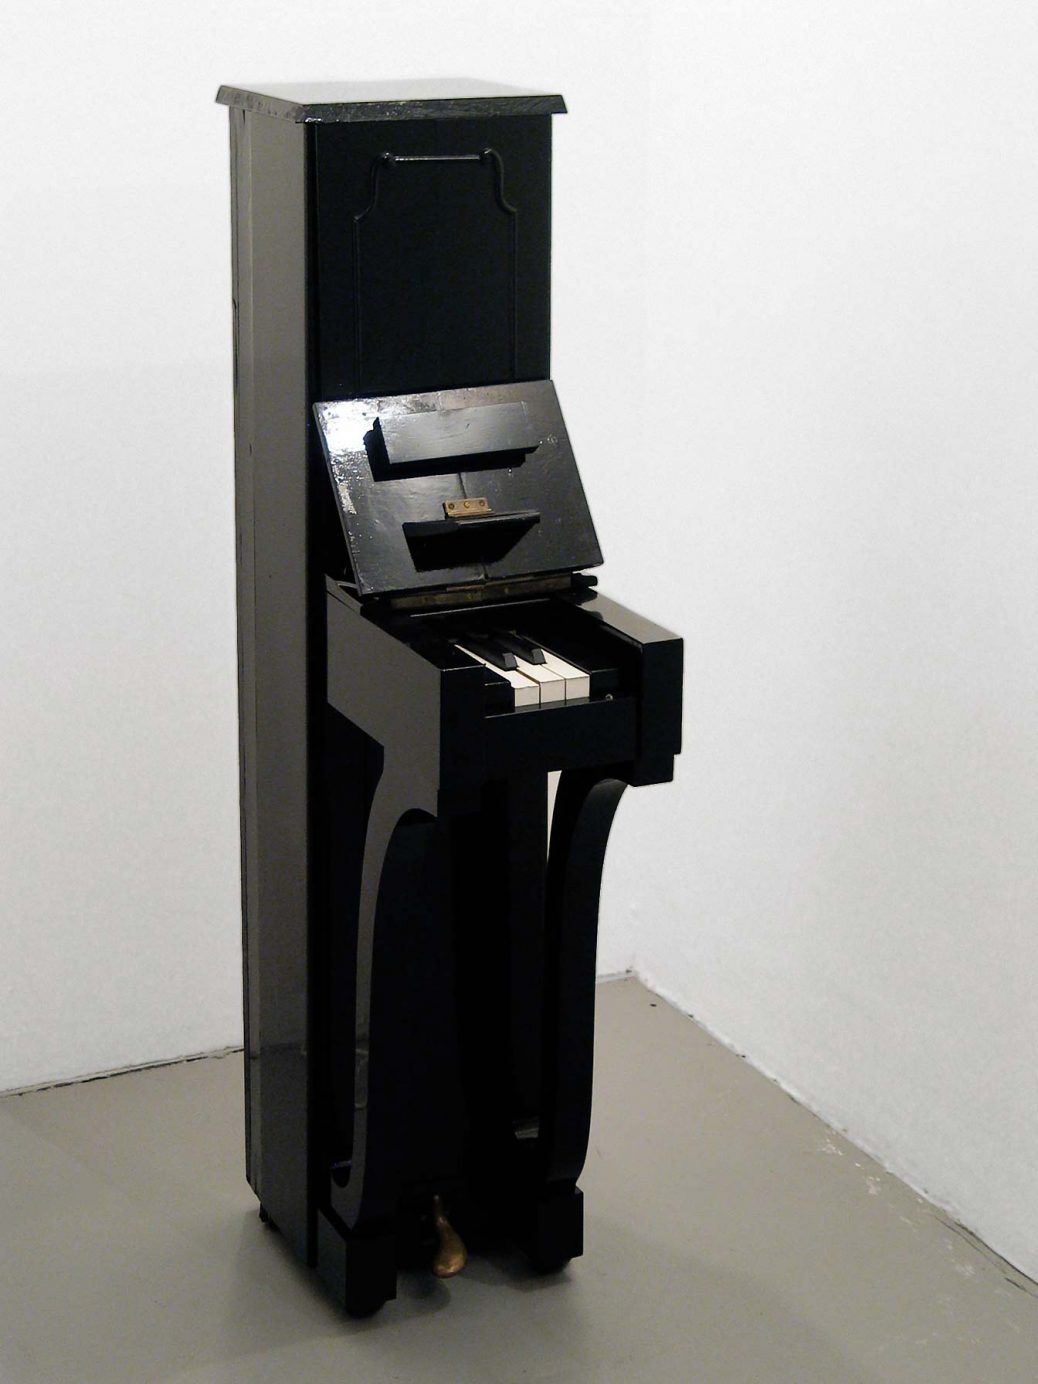 Piano, smalt piano med tre vita och två svarta tangenter, skulptur av Björn Perborg.